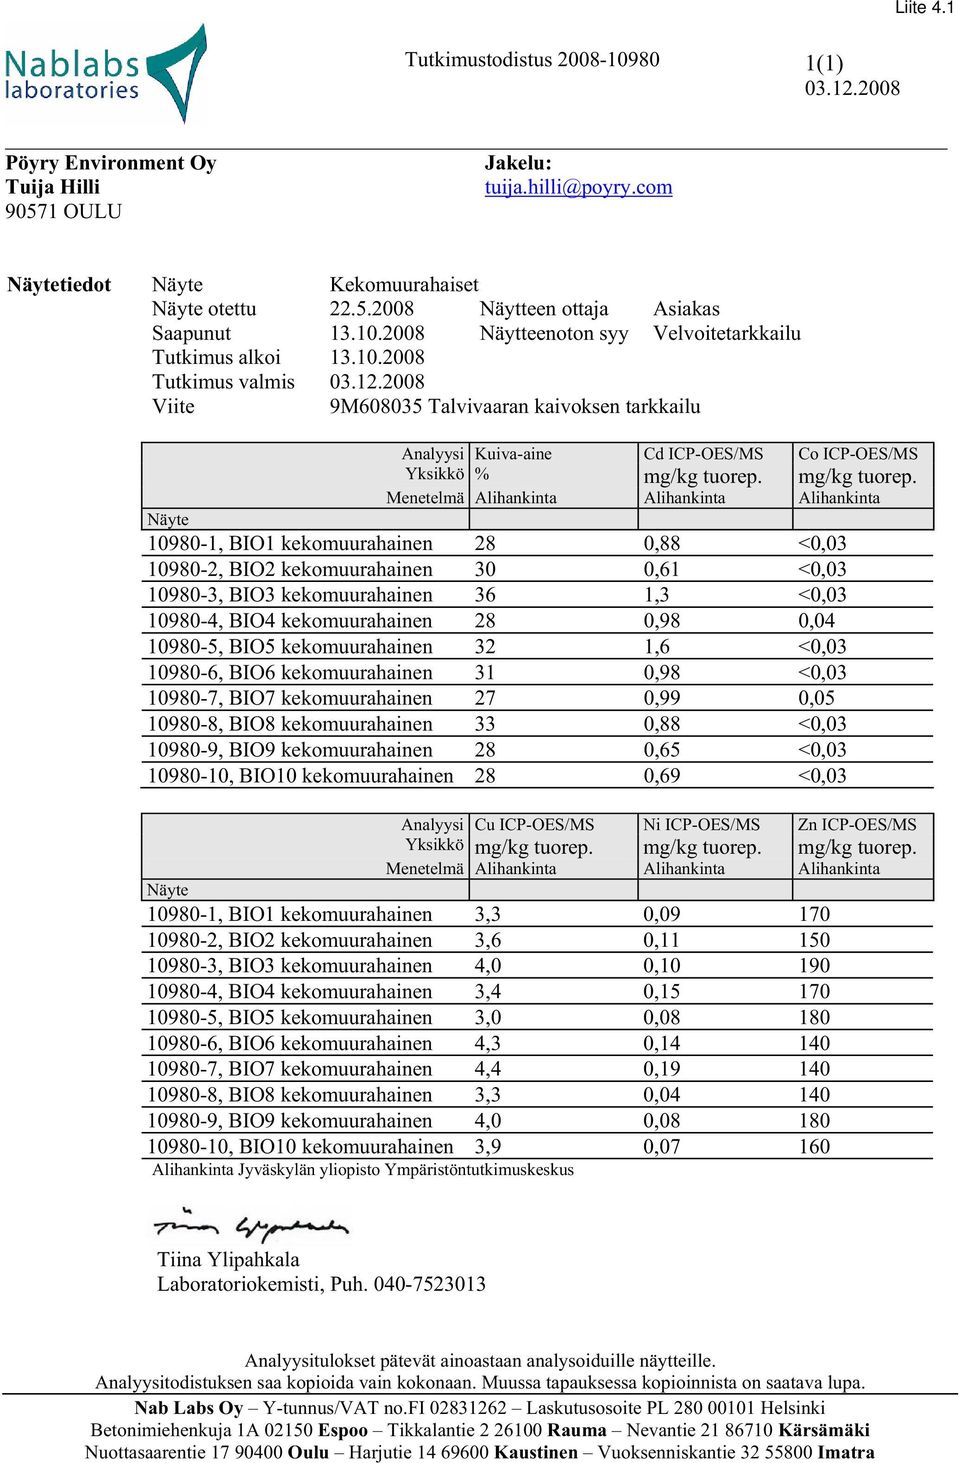 2008 Viite 9M608035 Talvivaaran kaivoksen tarkkailu Analyysi Kuiva-aine Cd ICP-OES/MS Co ICP-OES/MS Yksikkö % mg/kg tuorep.